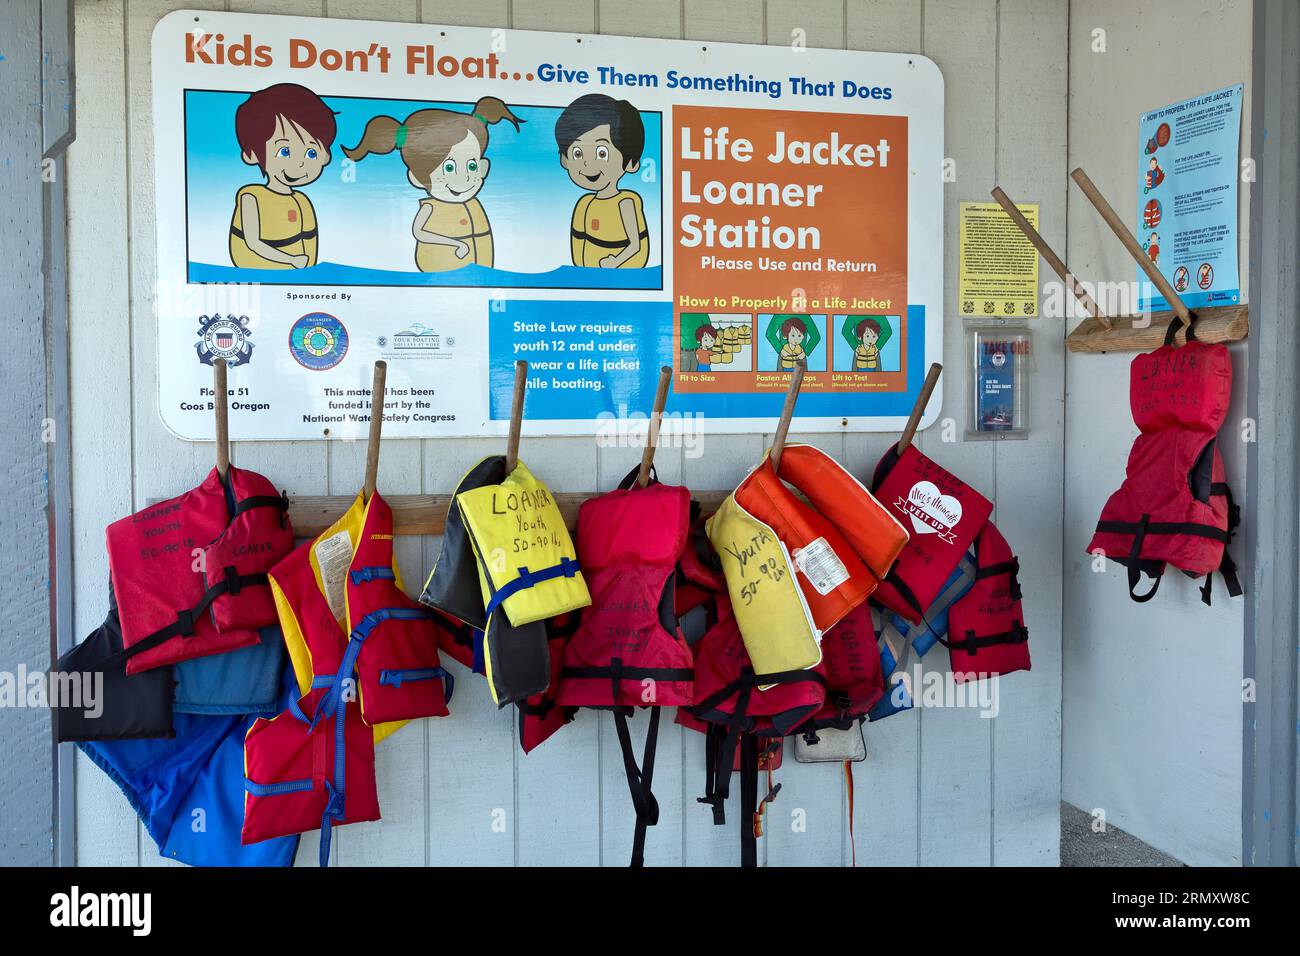 Life Jacket Loaner Station, Charleston Harbor, National Water Safety, State Law richiede ai giovani di età inferiore ai 12 anni di indossare un giubbotto salvagente durante la navigazione in barca. Foto Stock